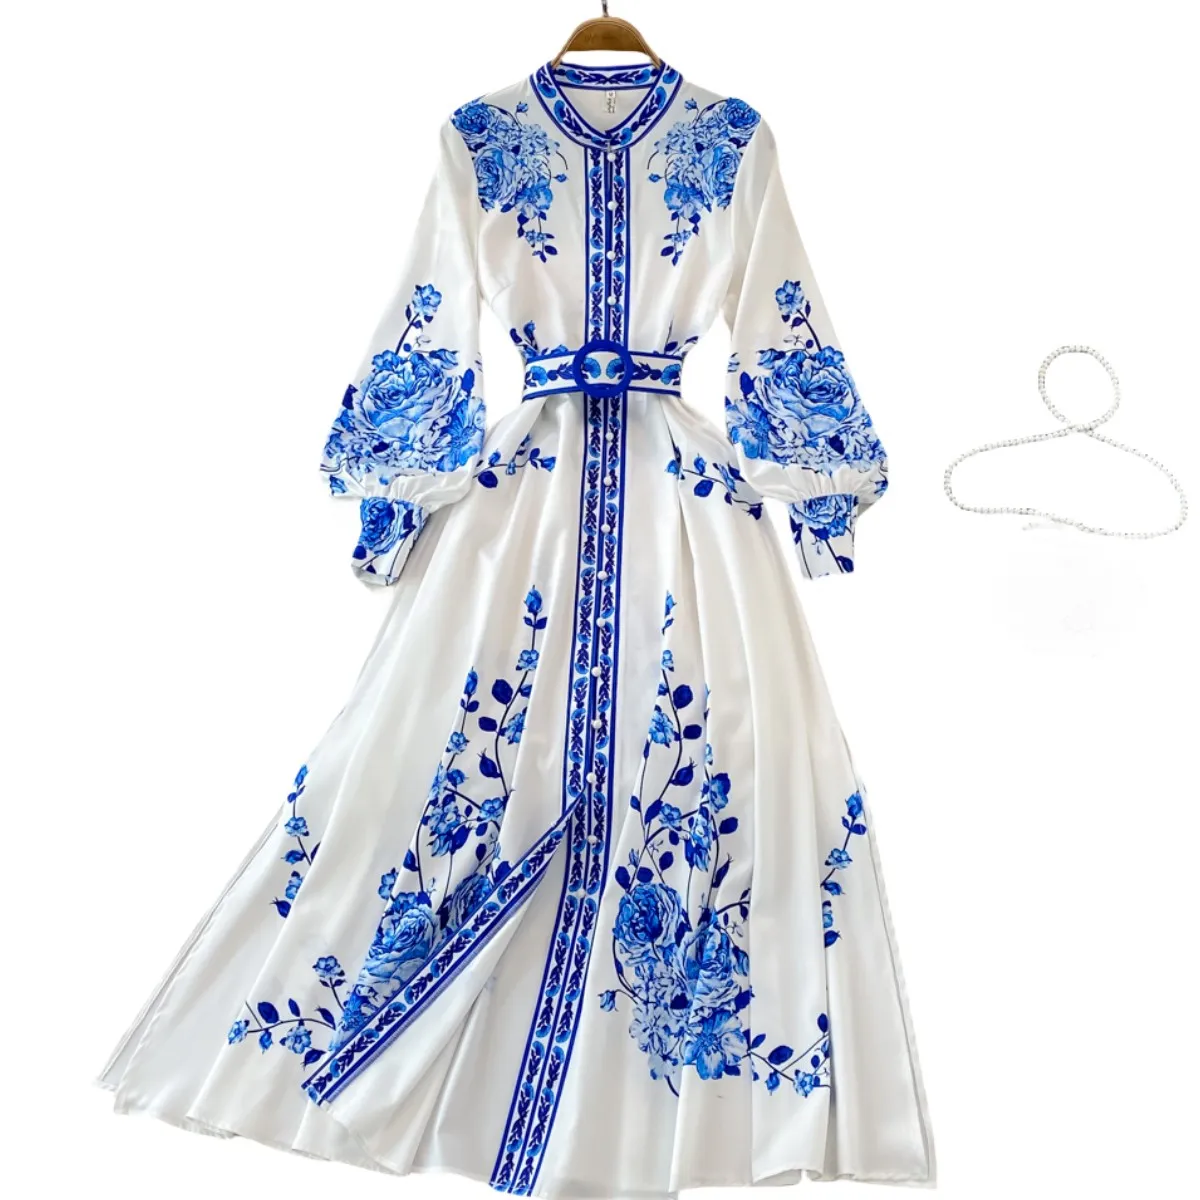 Blau-weißes Porzellan bedrucktes einreihiges Kleid mit Rundhalsausschnitt S M L XL 2XL